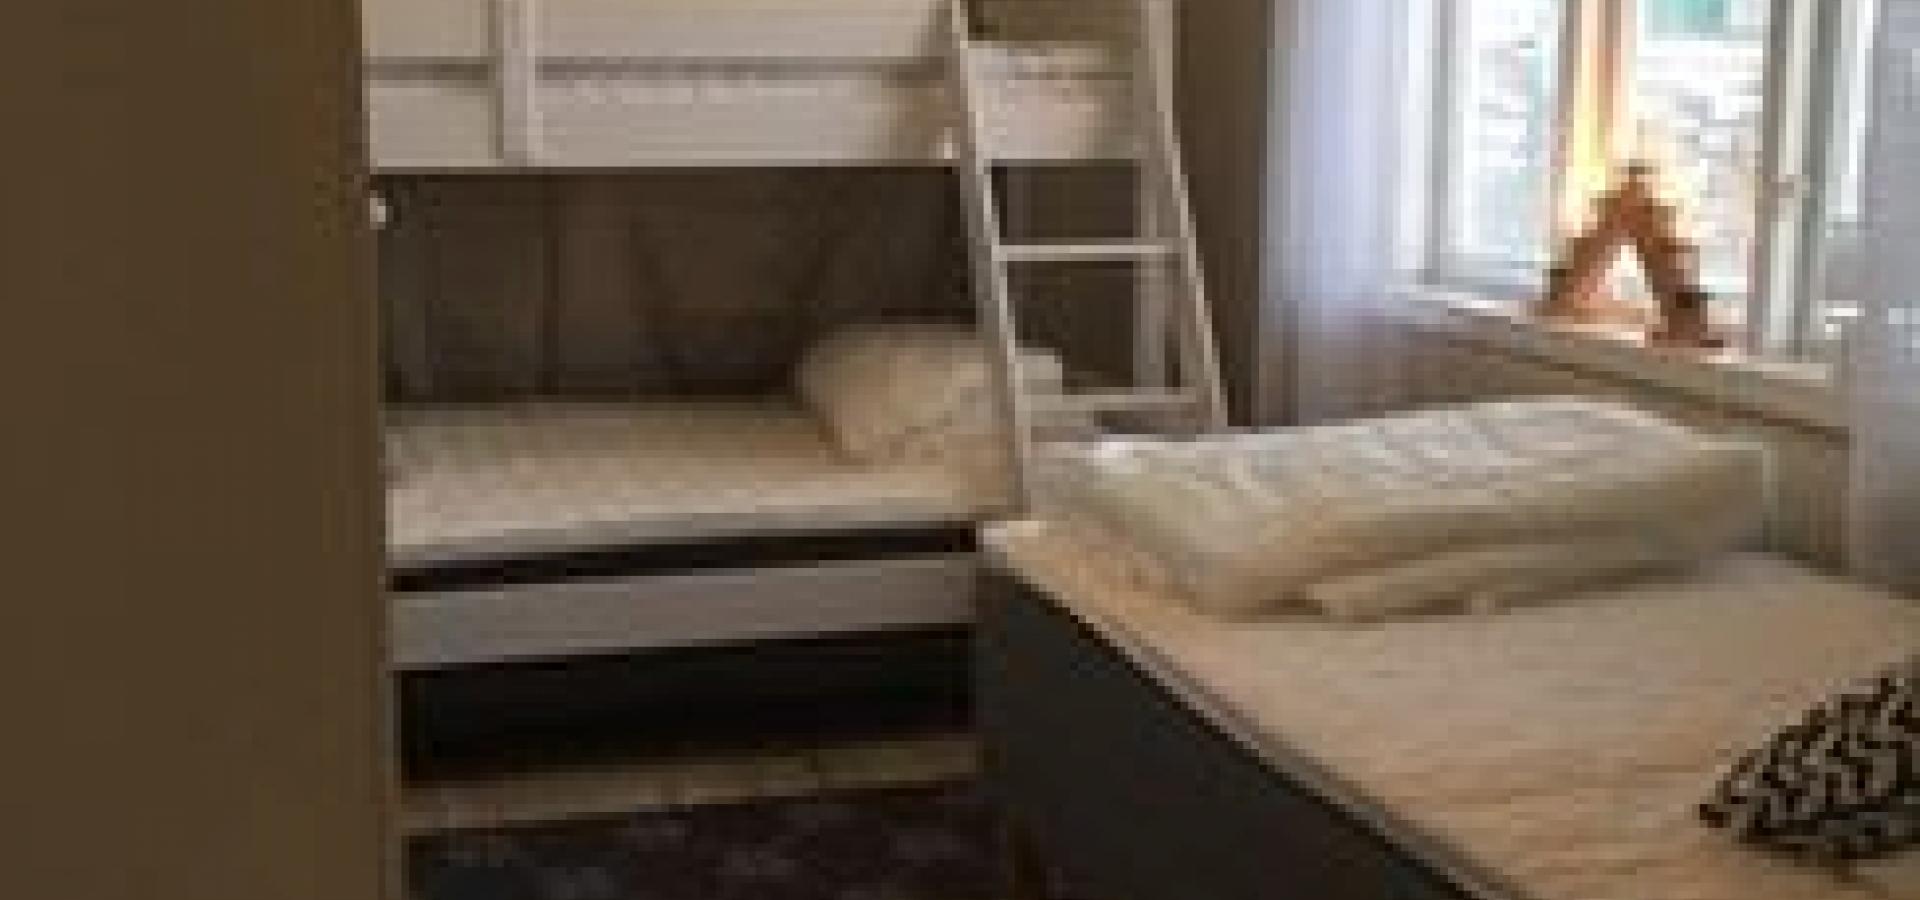 Sovrum med familjesäng 120 cm / 80 cm samt en enkelsäng på 90 cm